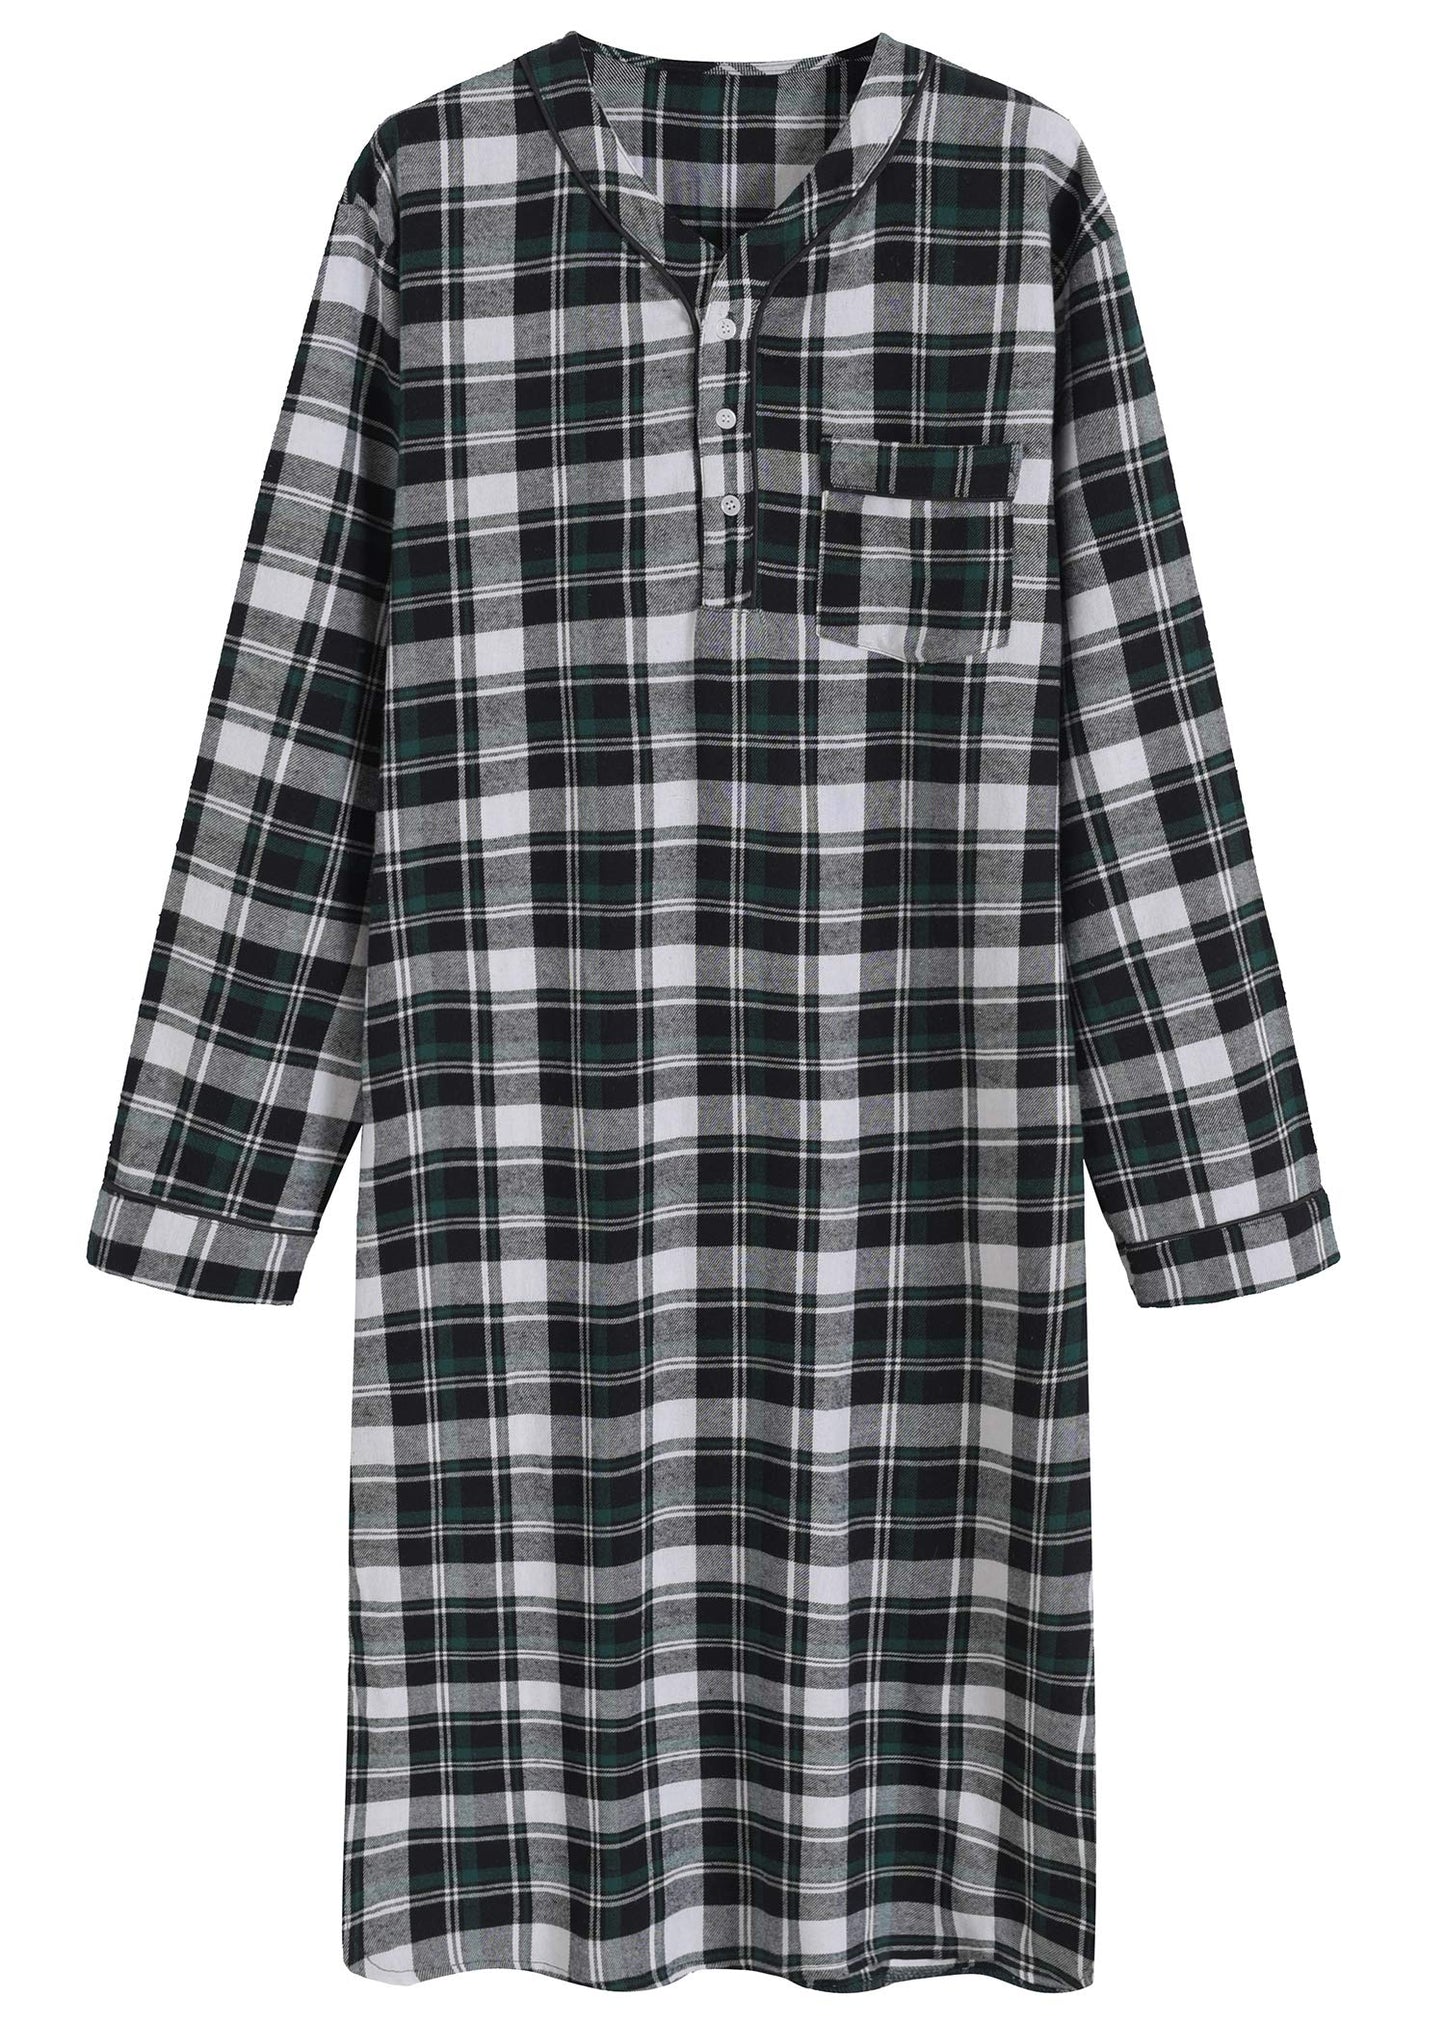 Men's Cotton Flannel Nightshirt Sleep Shirt